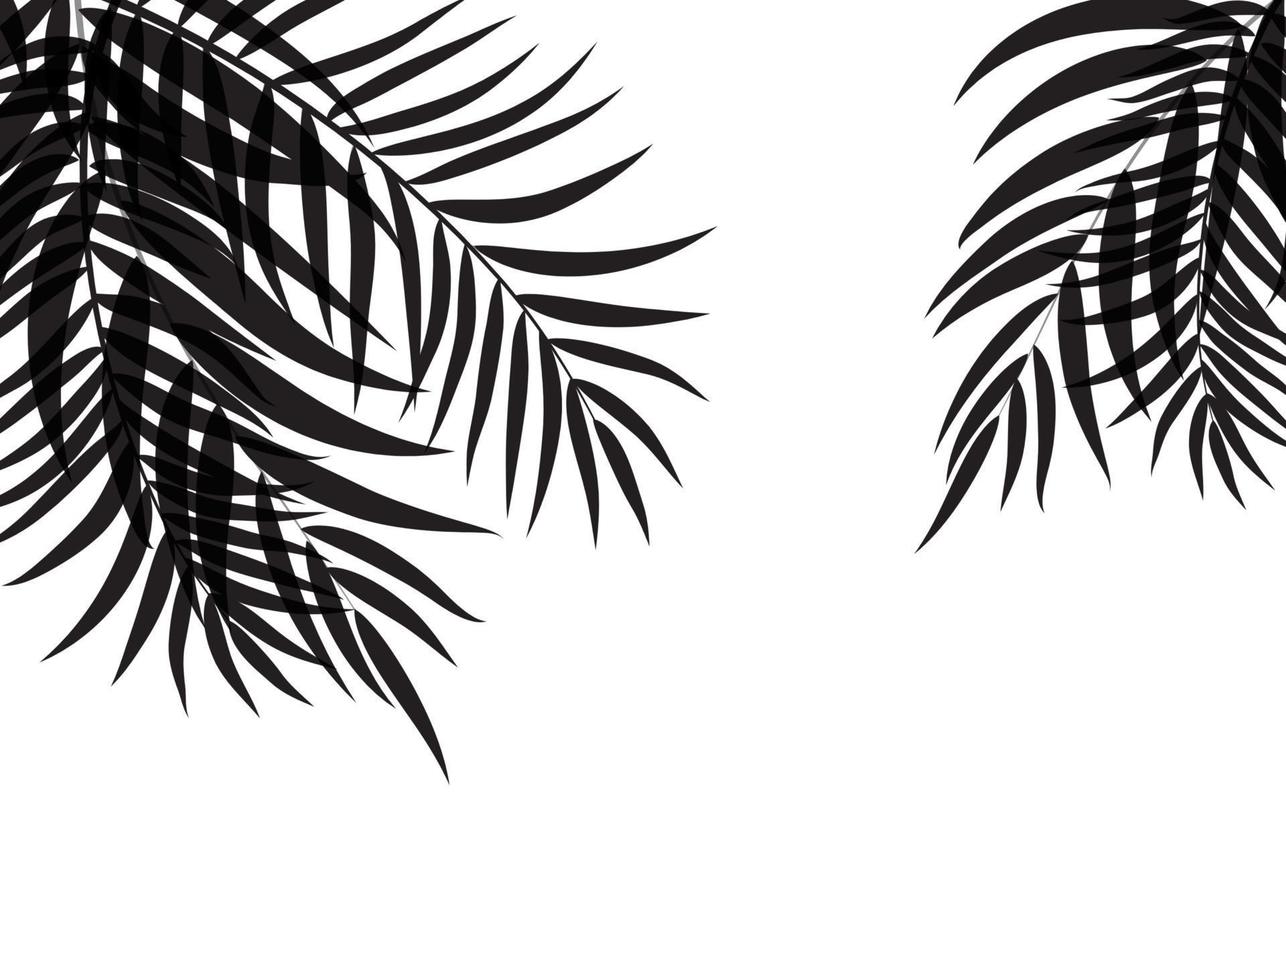 beautifil palmblad silhuett bakgrund vektorillustration vektor